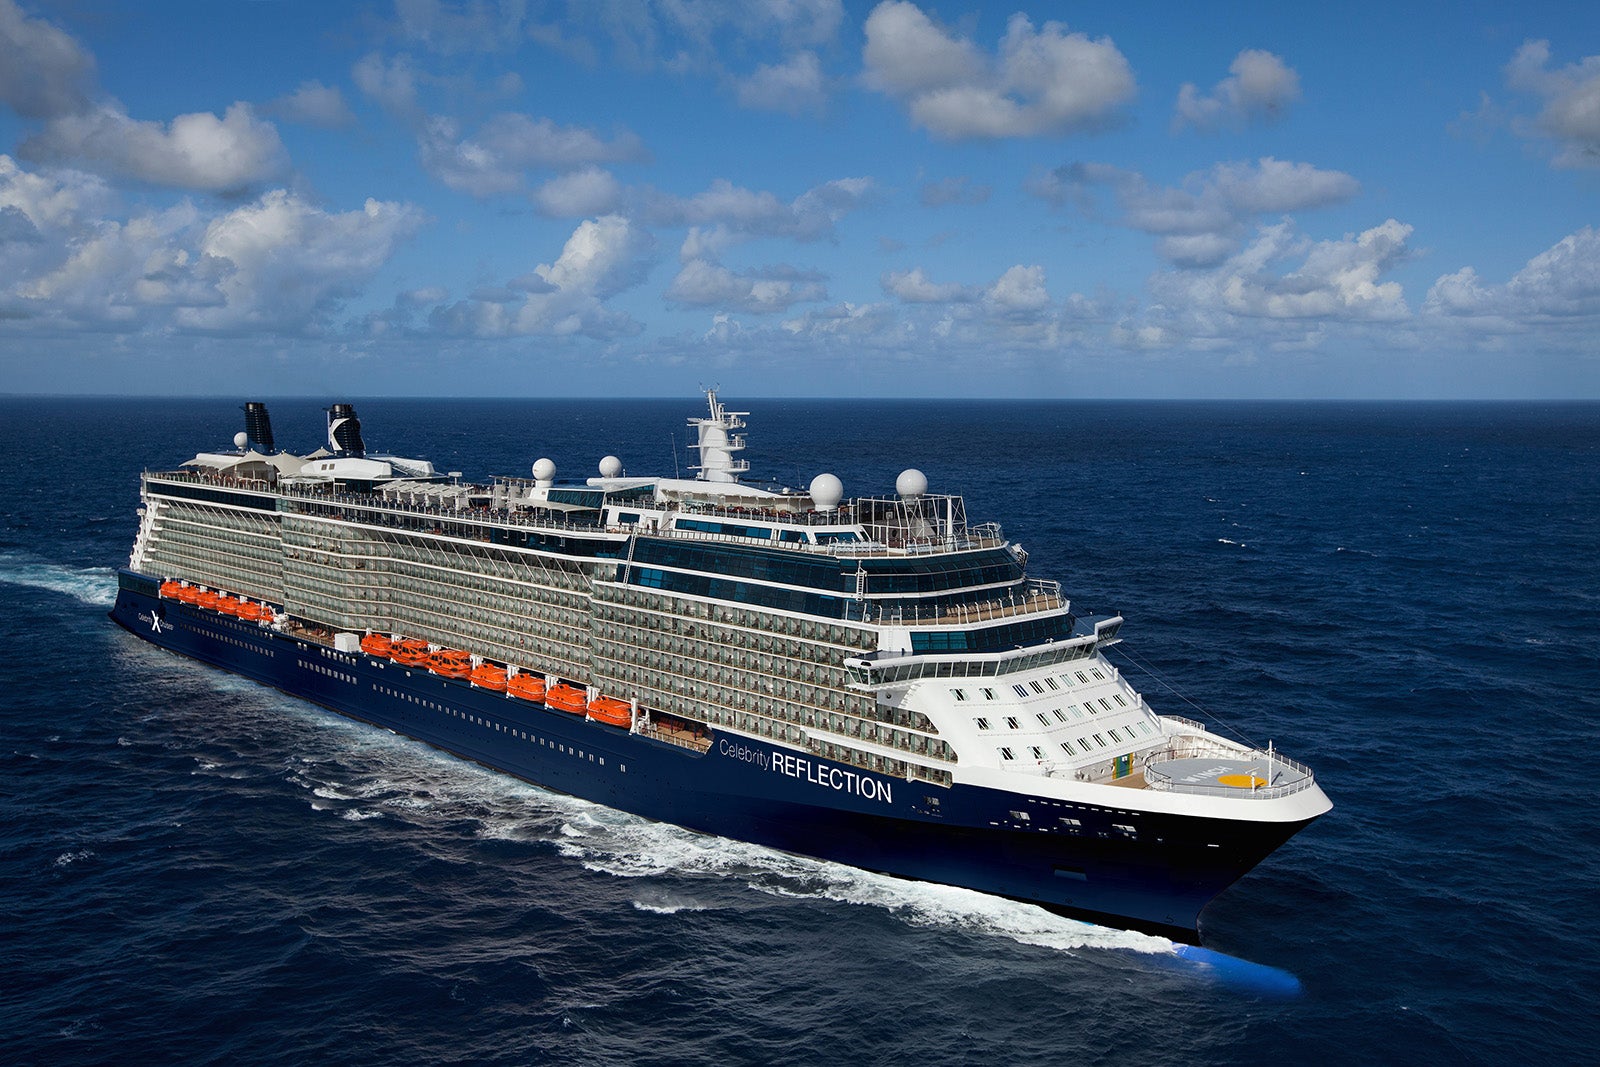 celebrity cruises new ship name